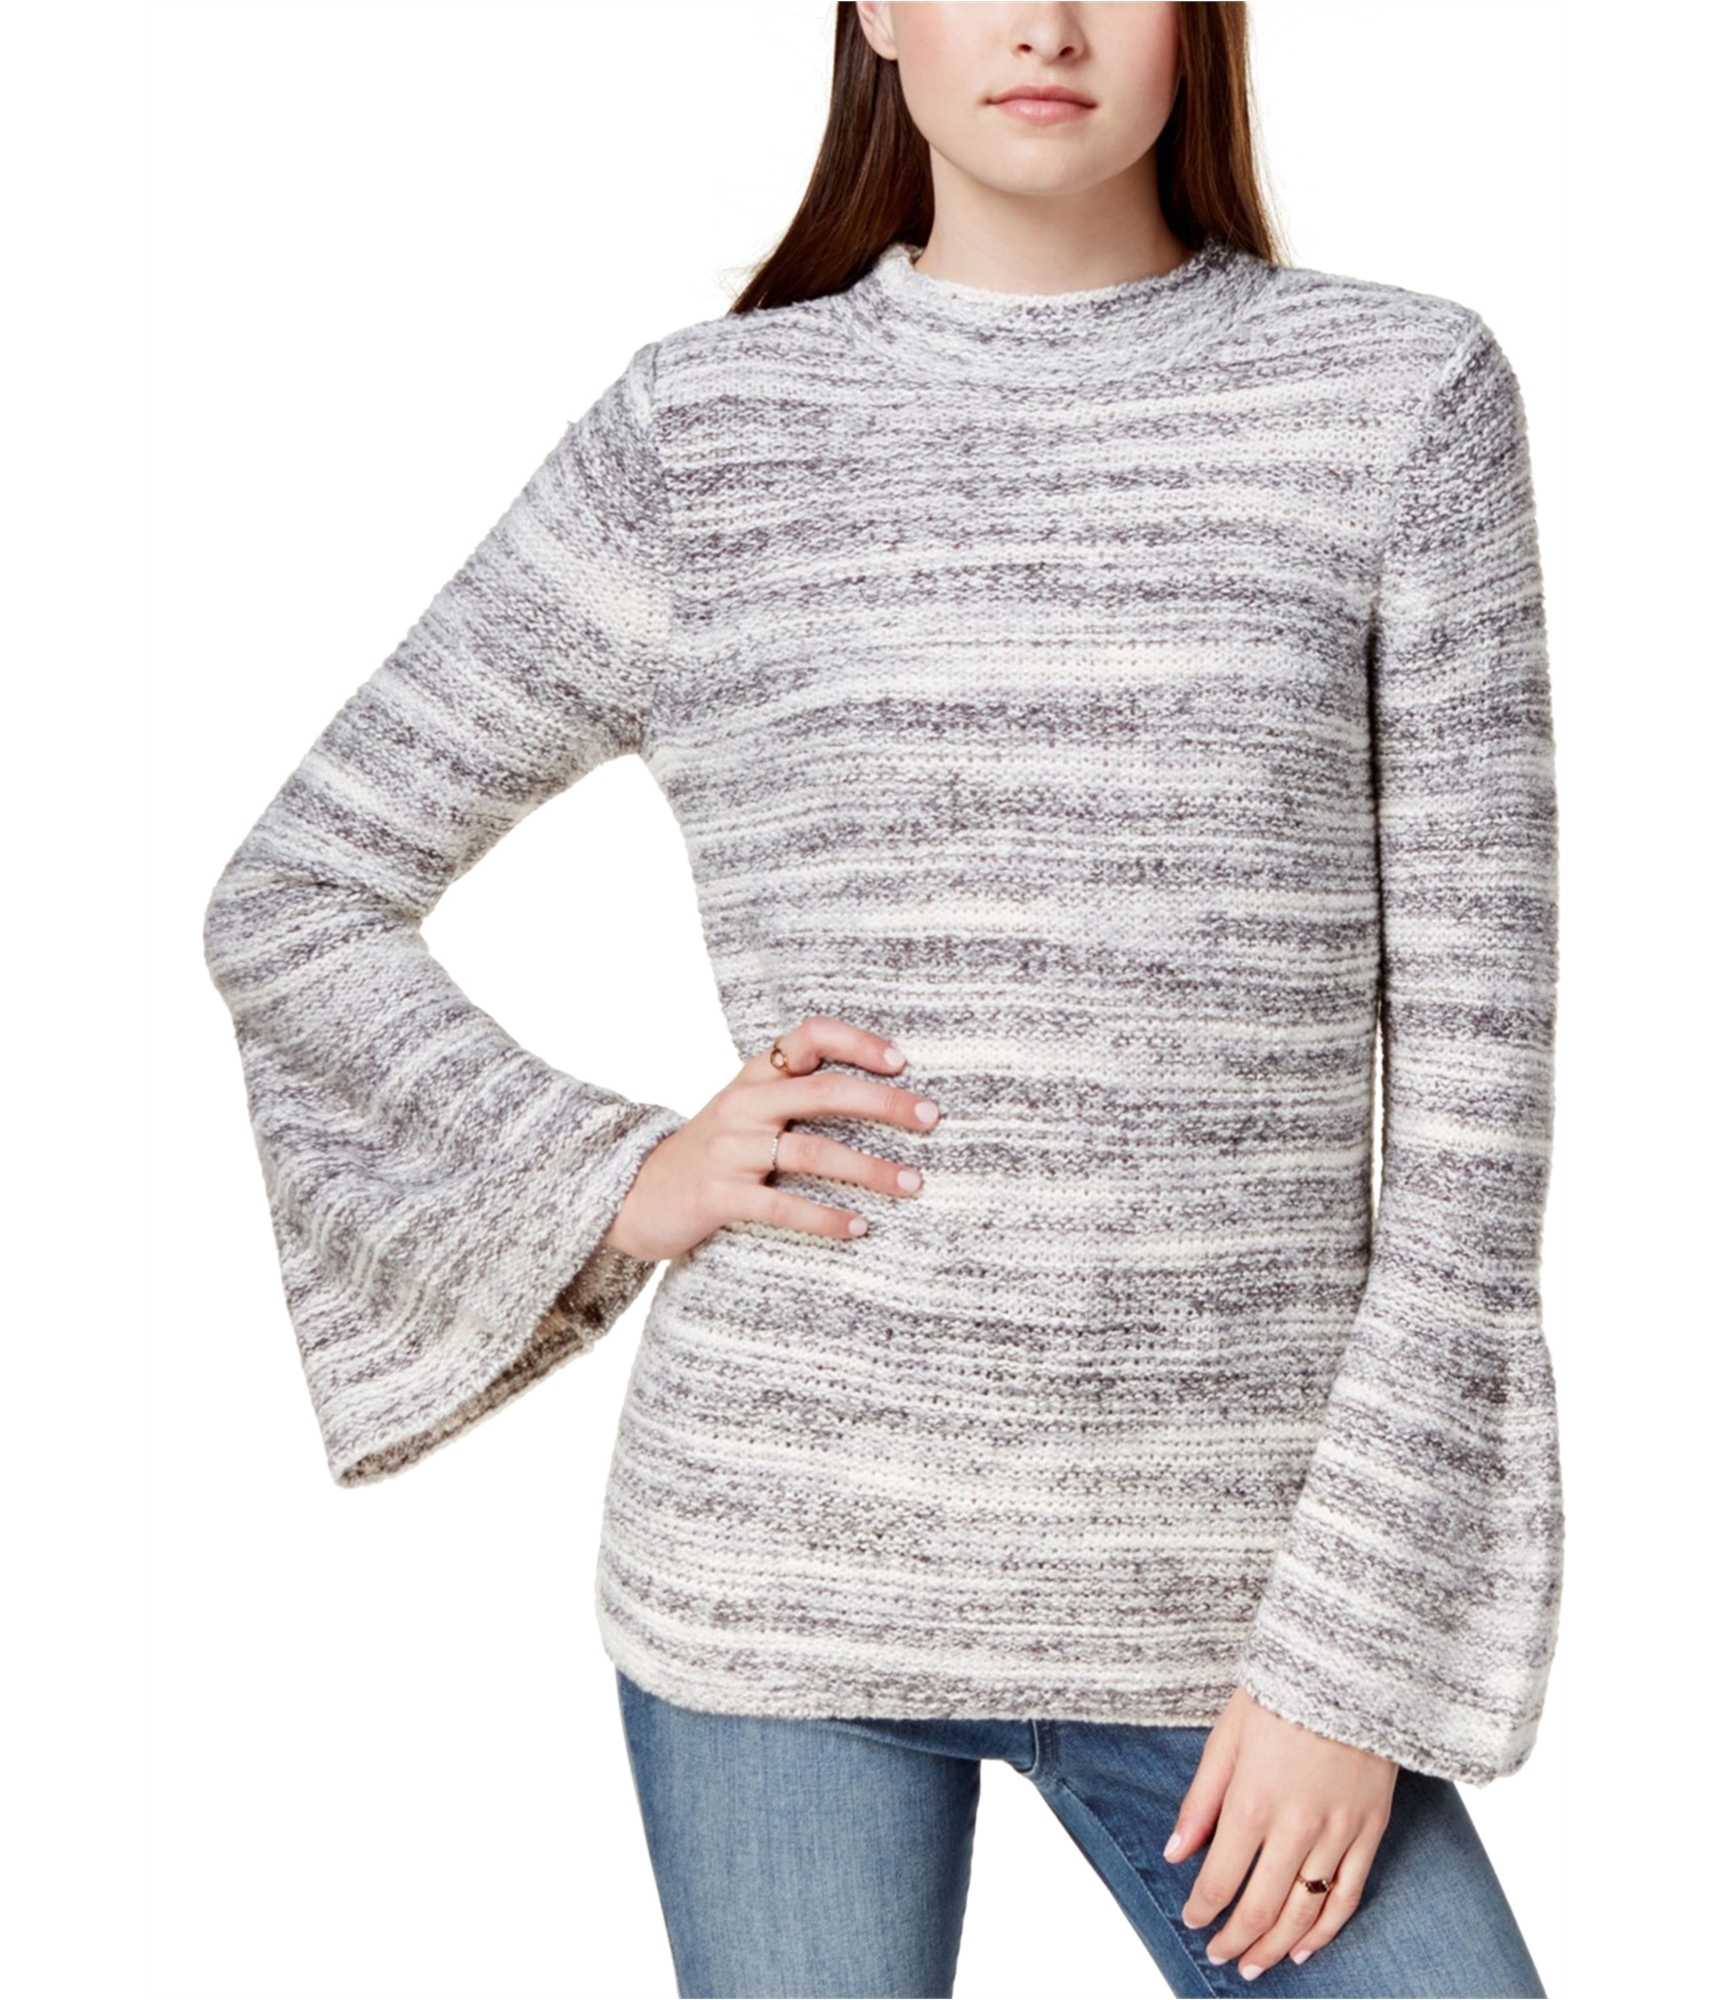 Kensie Womens Bell Sleeve Cardigan Sweater